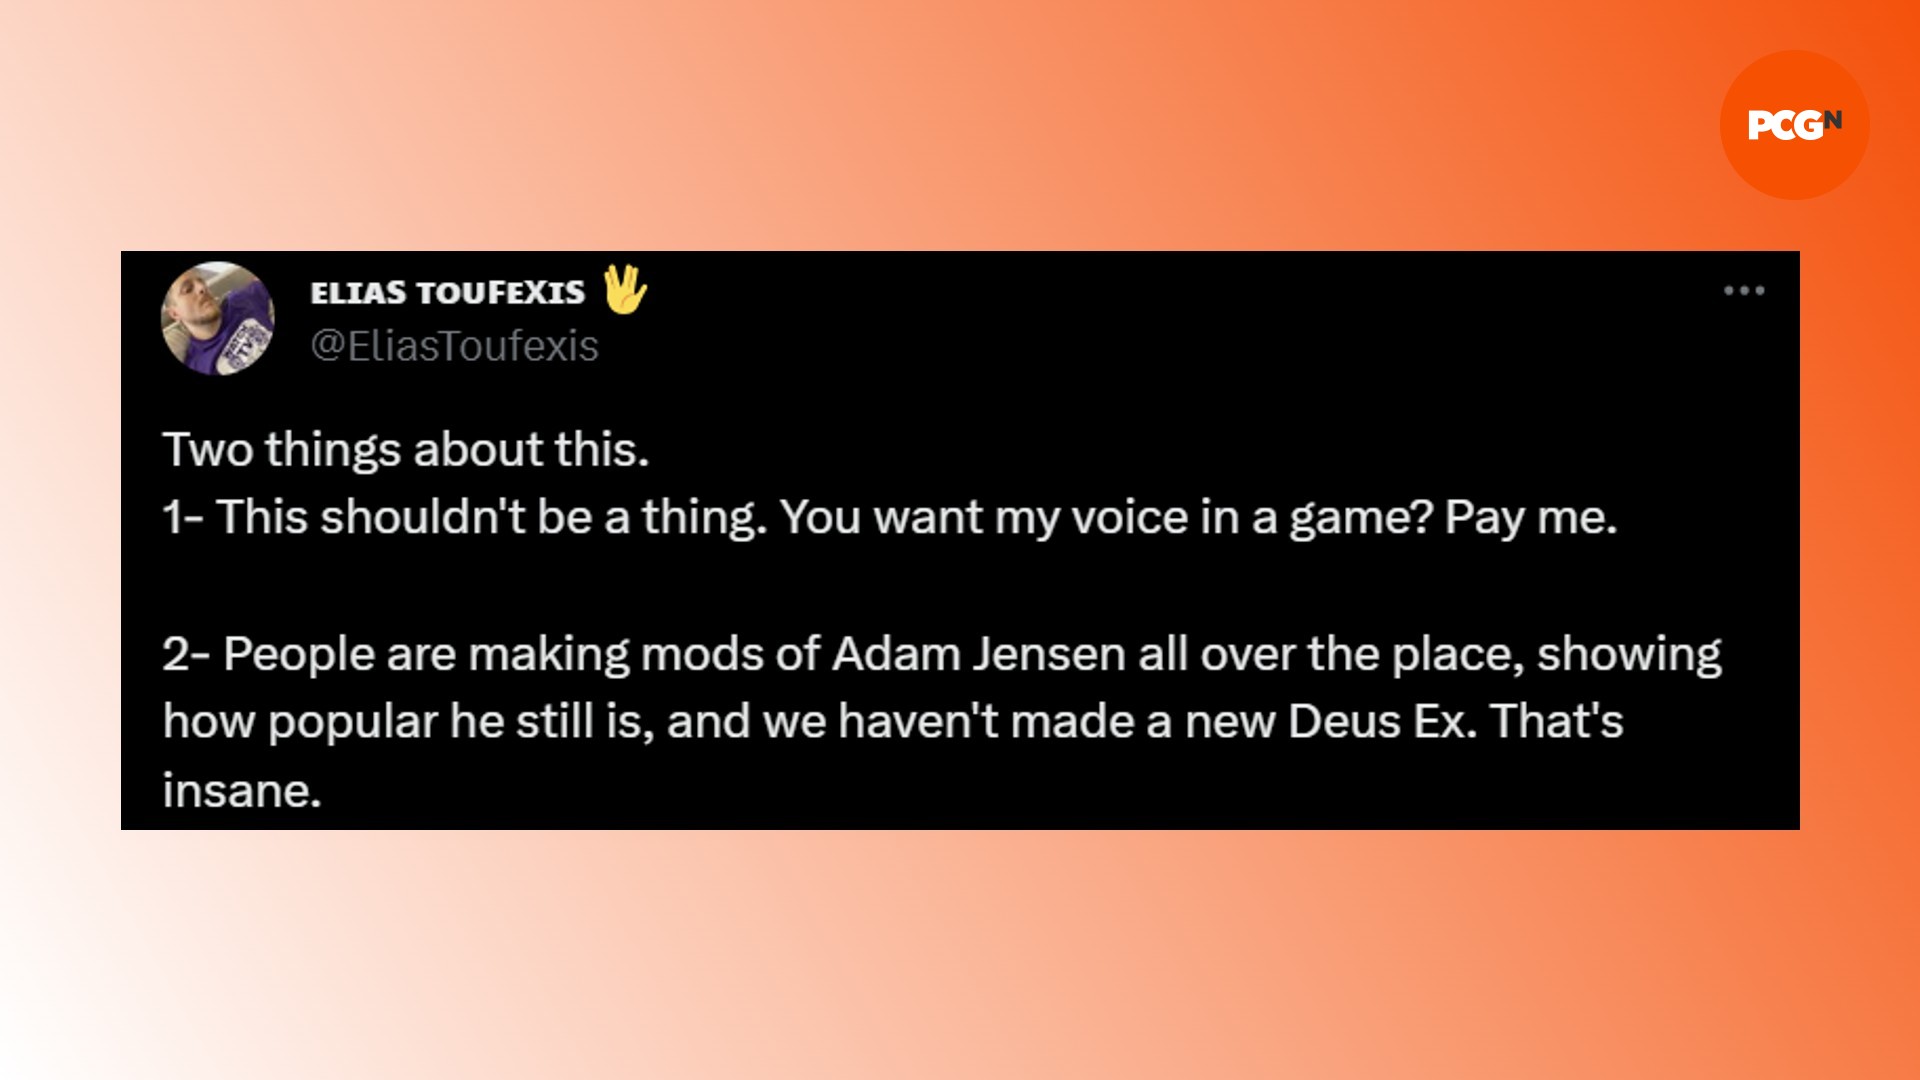 Nuevo juego de Deus Ex: un tweet del actor de Adam Jensen, Elias Toufexis, sobre un nuevo juego de Deus Ex